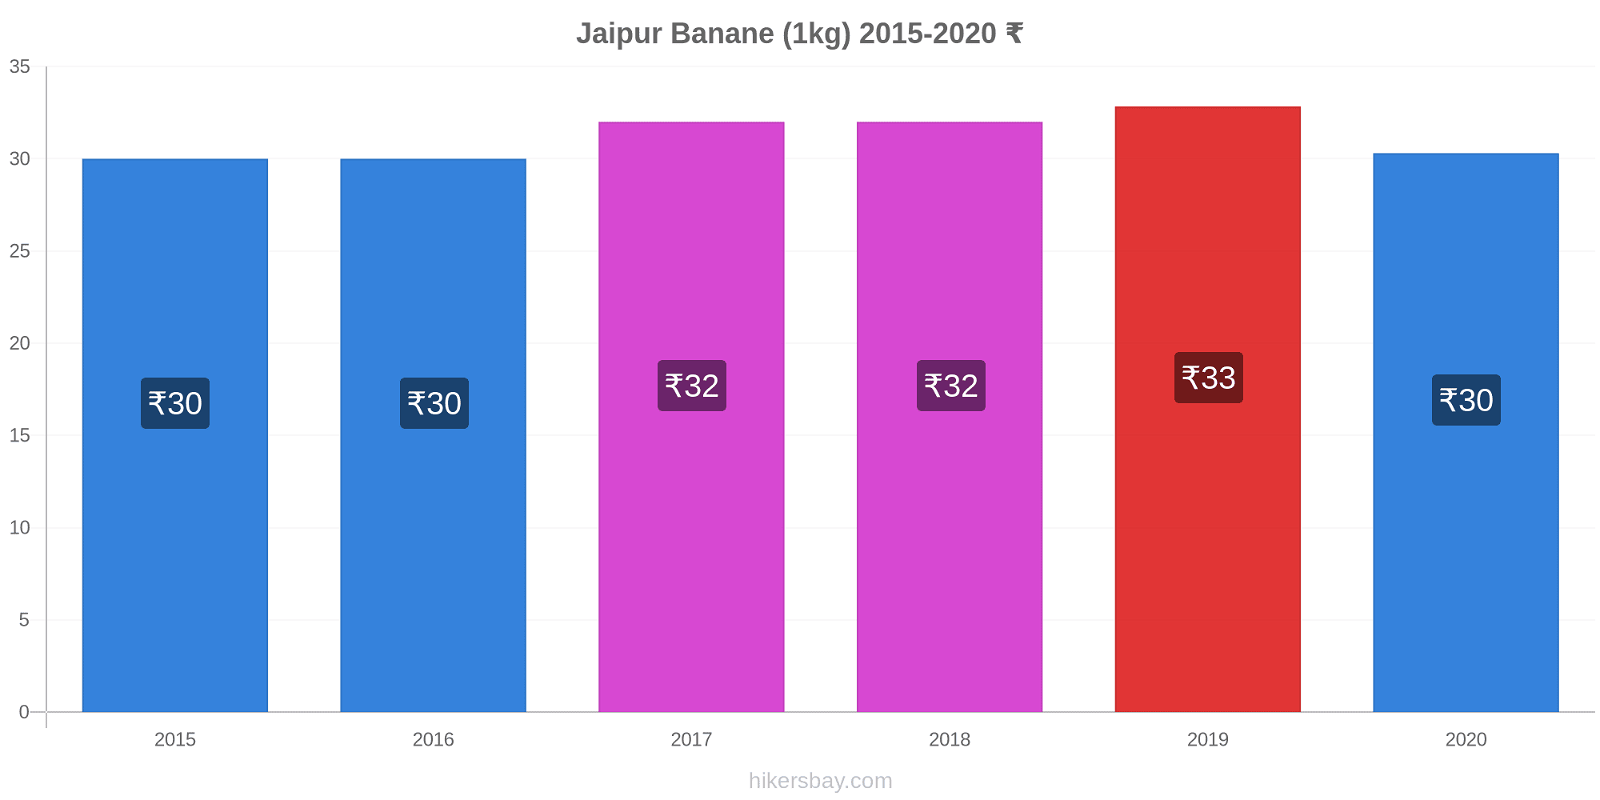 Jaipur variazioni di prezzo Banana (1kg) hikersbay.com